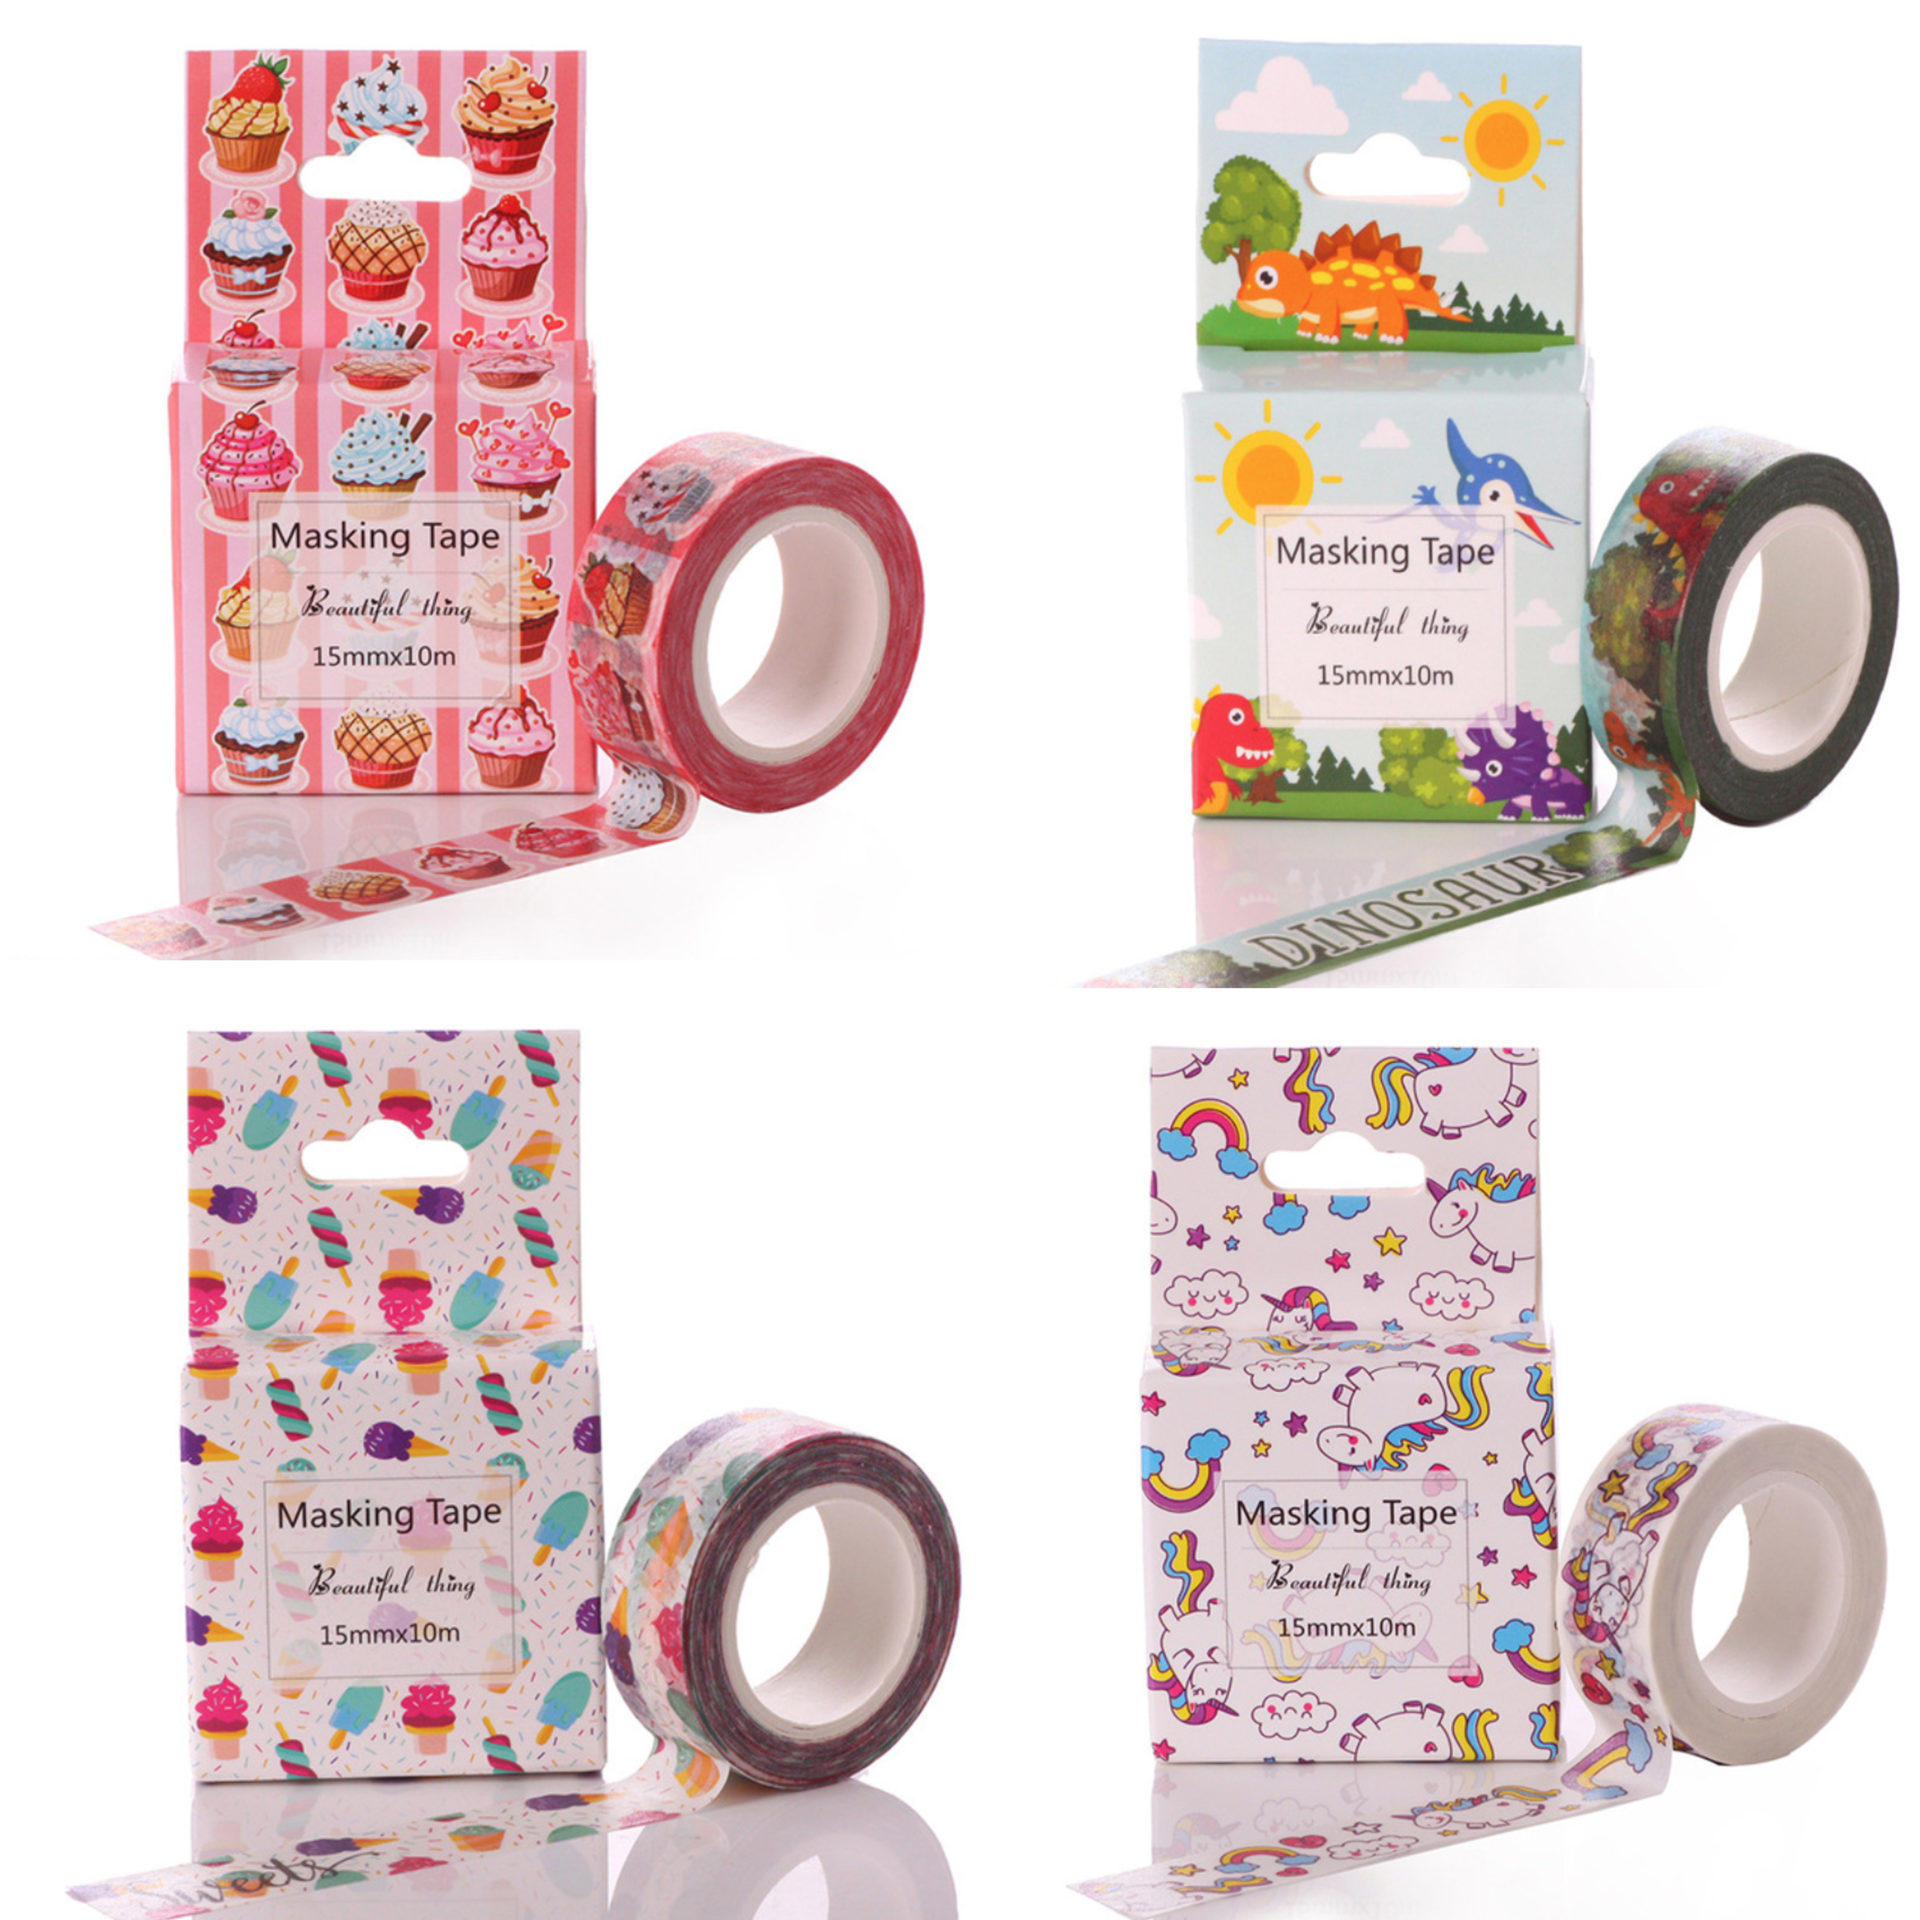 Washi Tape: la cinta adhesiva decorativa de los mil usos